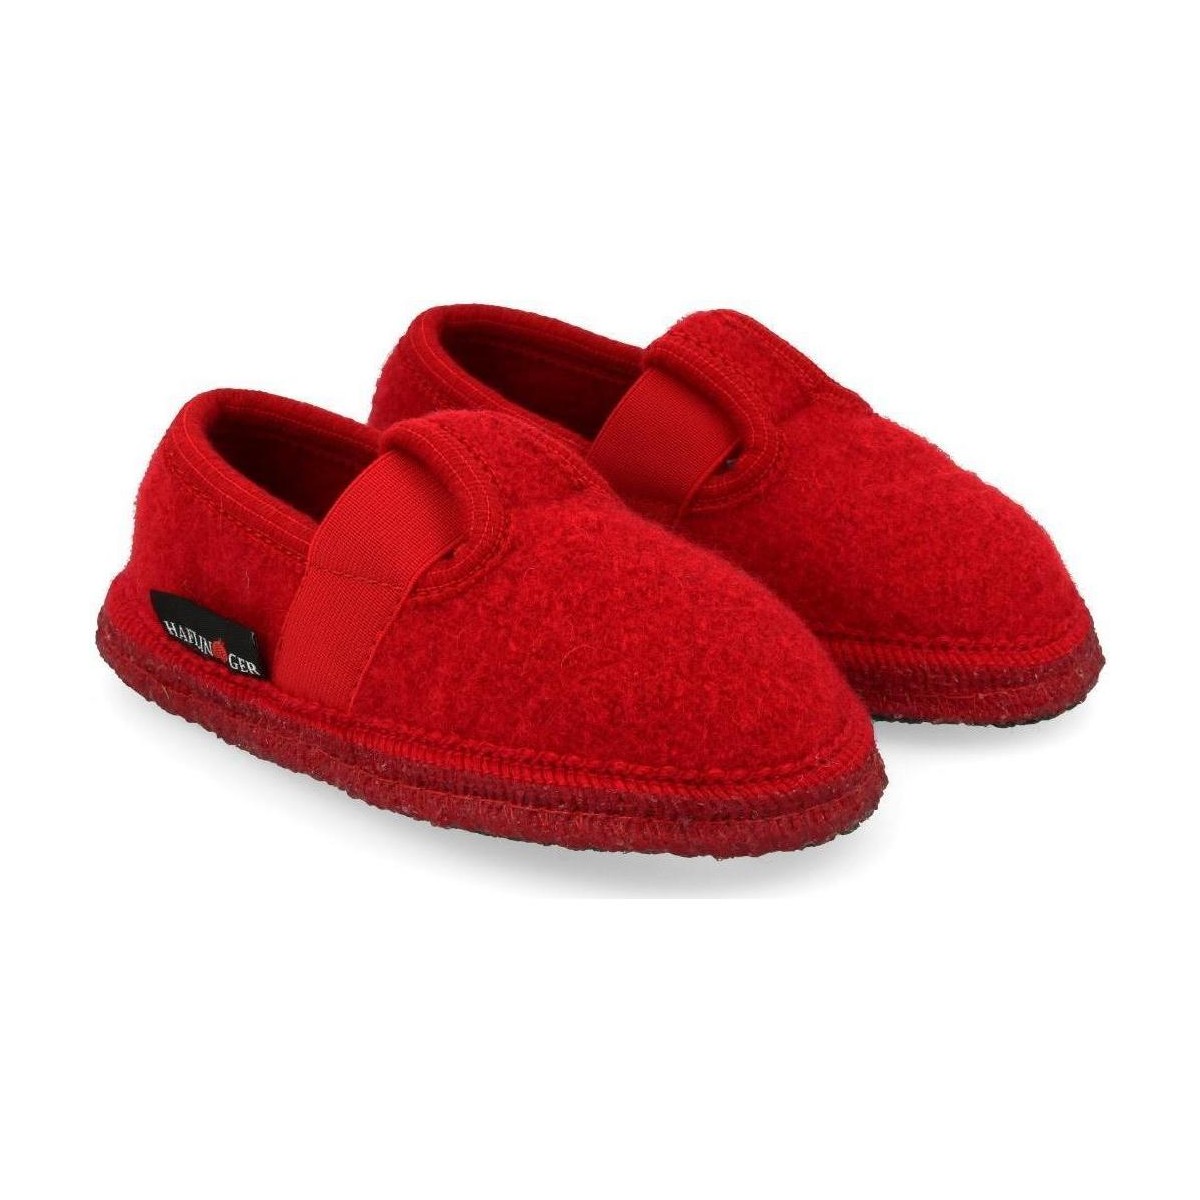 Schuhe Kinder Hausschuhe Haflinger 62100211 Rot